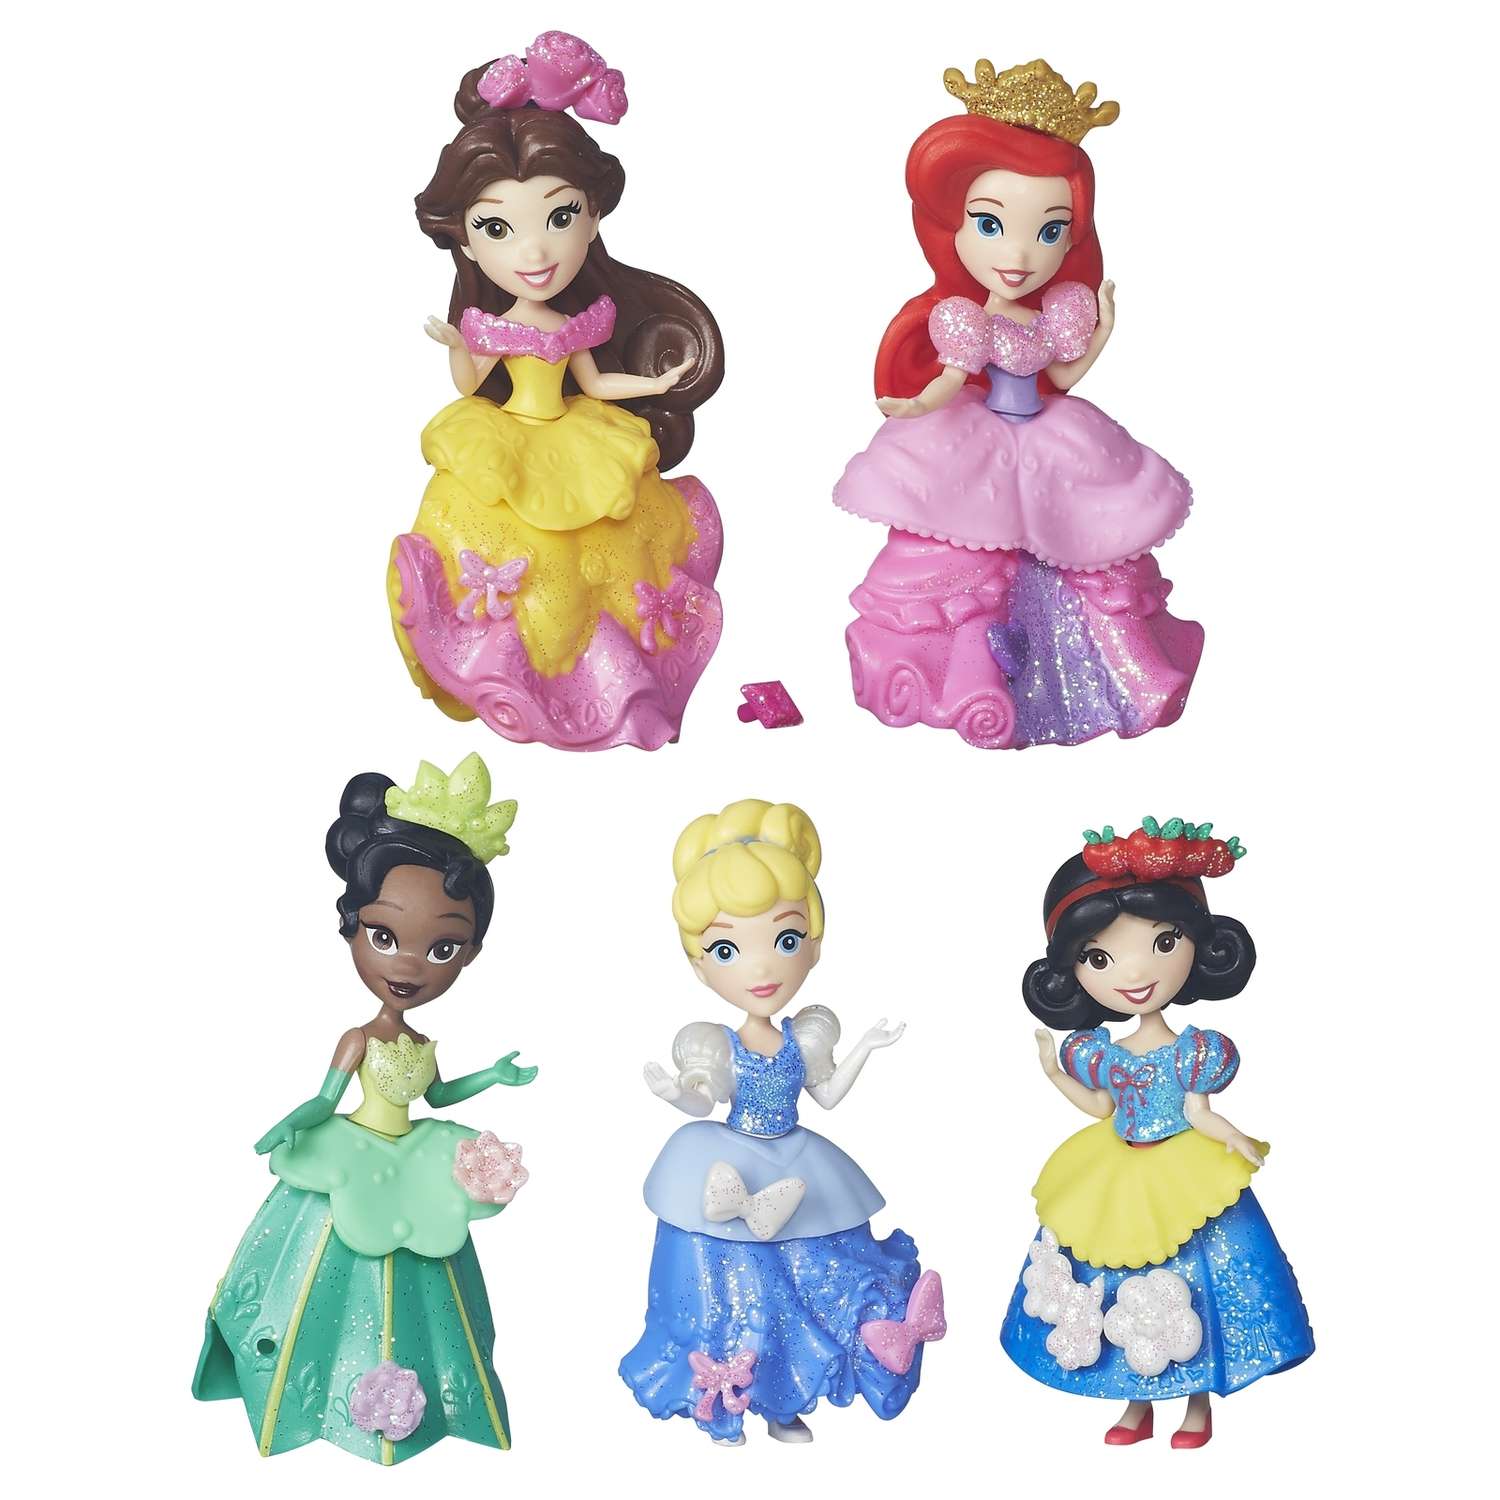 Набор Princess из 5-ти маленьких кукол Принцесс B5347EU4 - фото 2